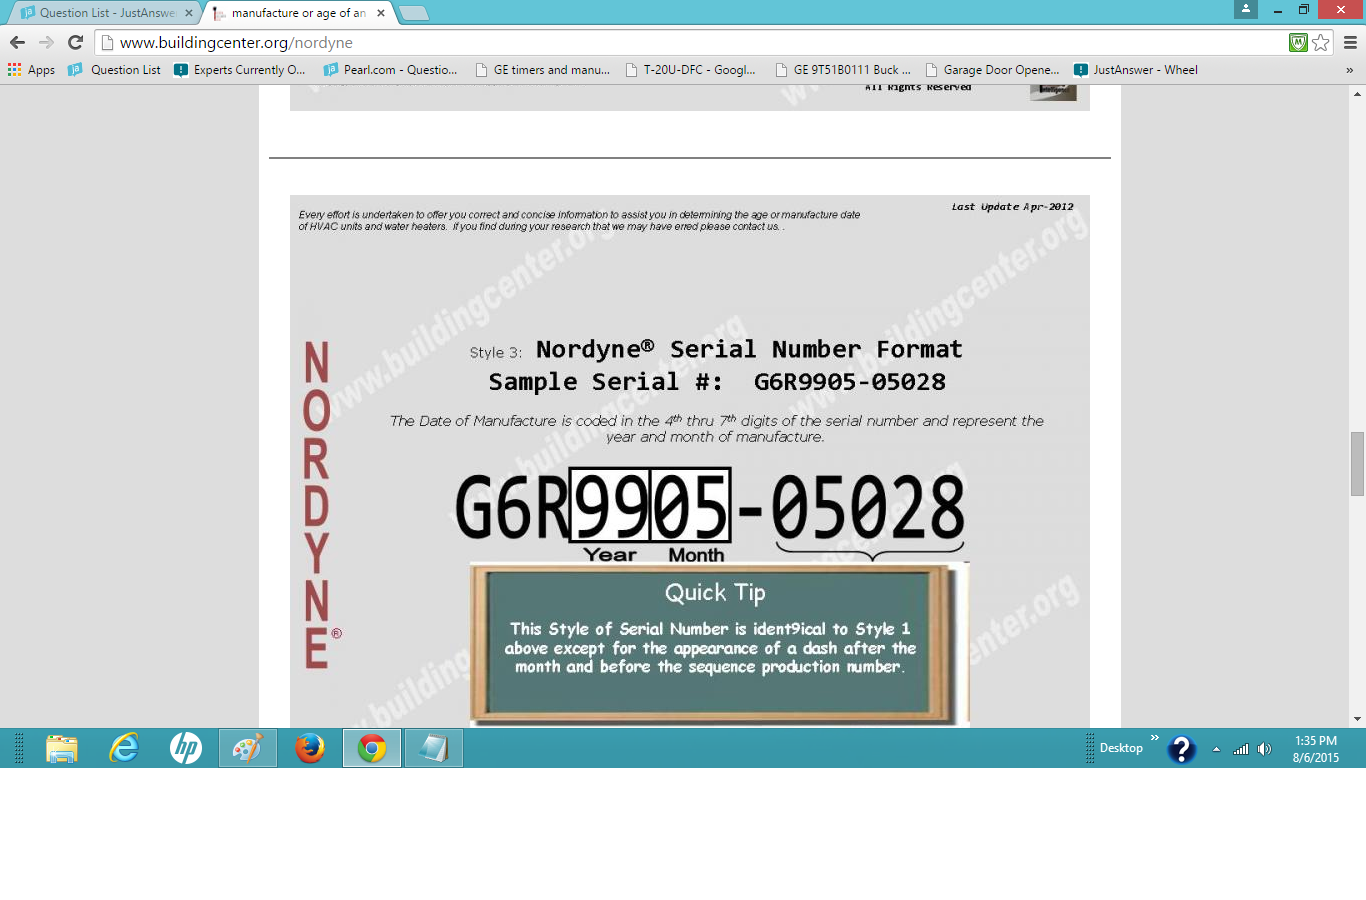 Nordyne Serial Number